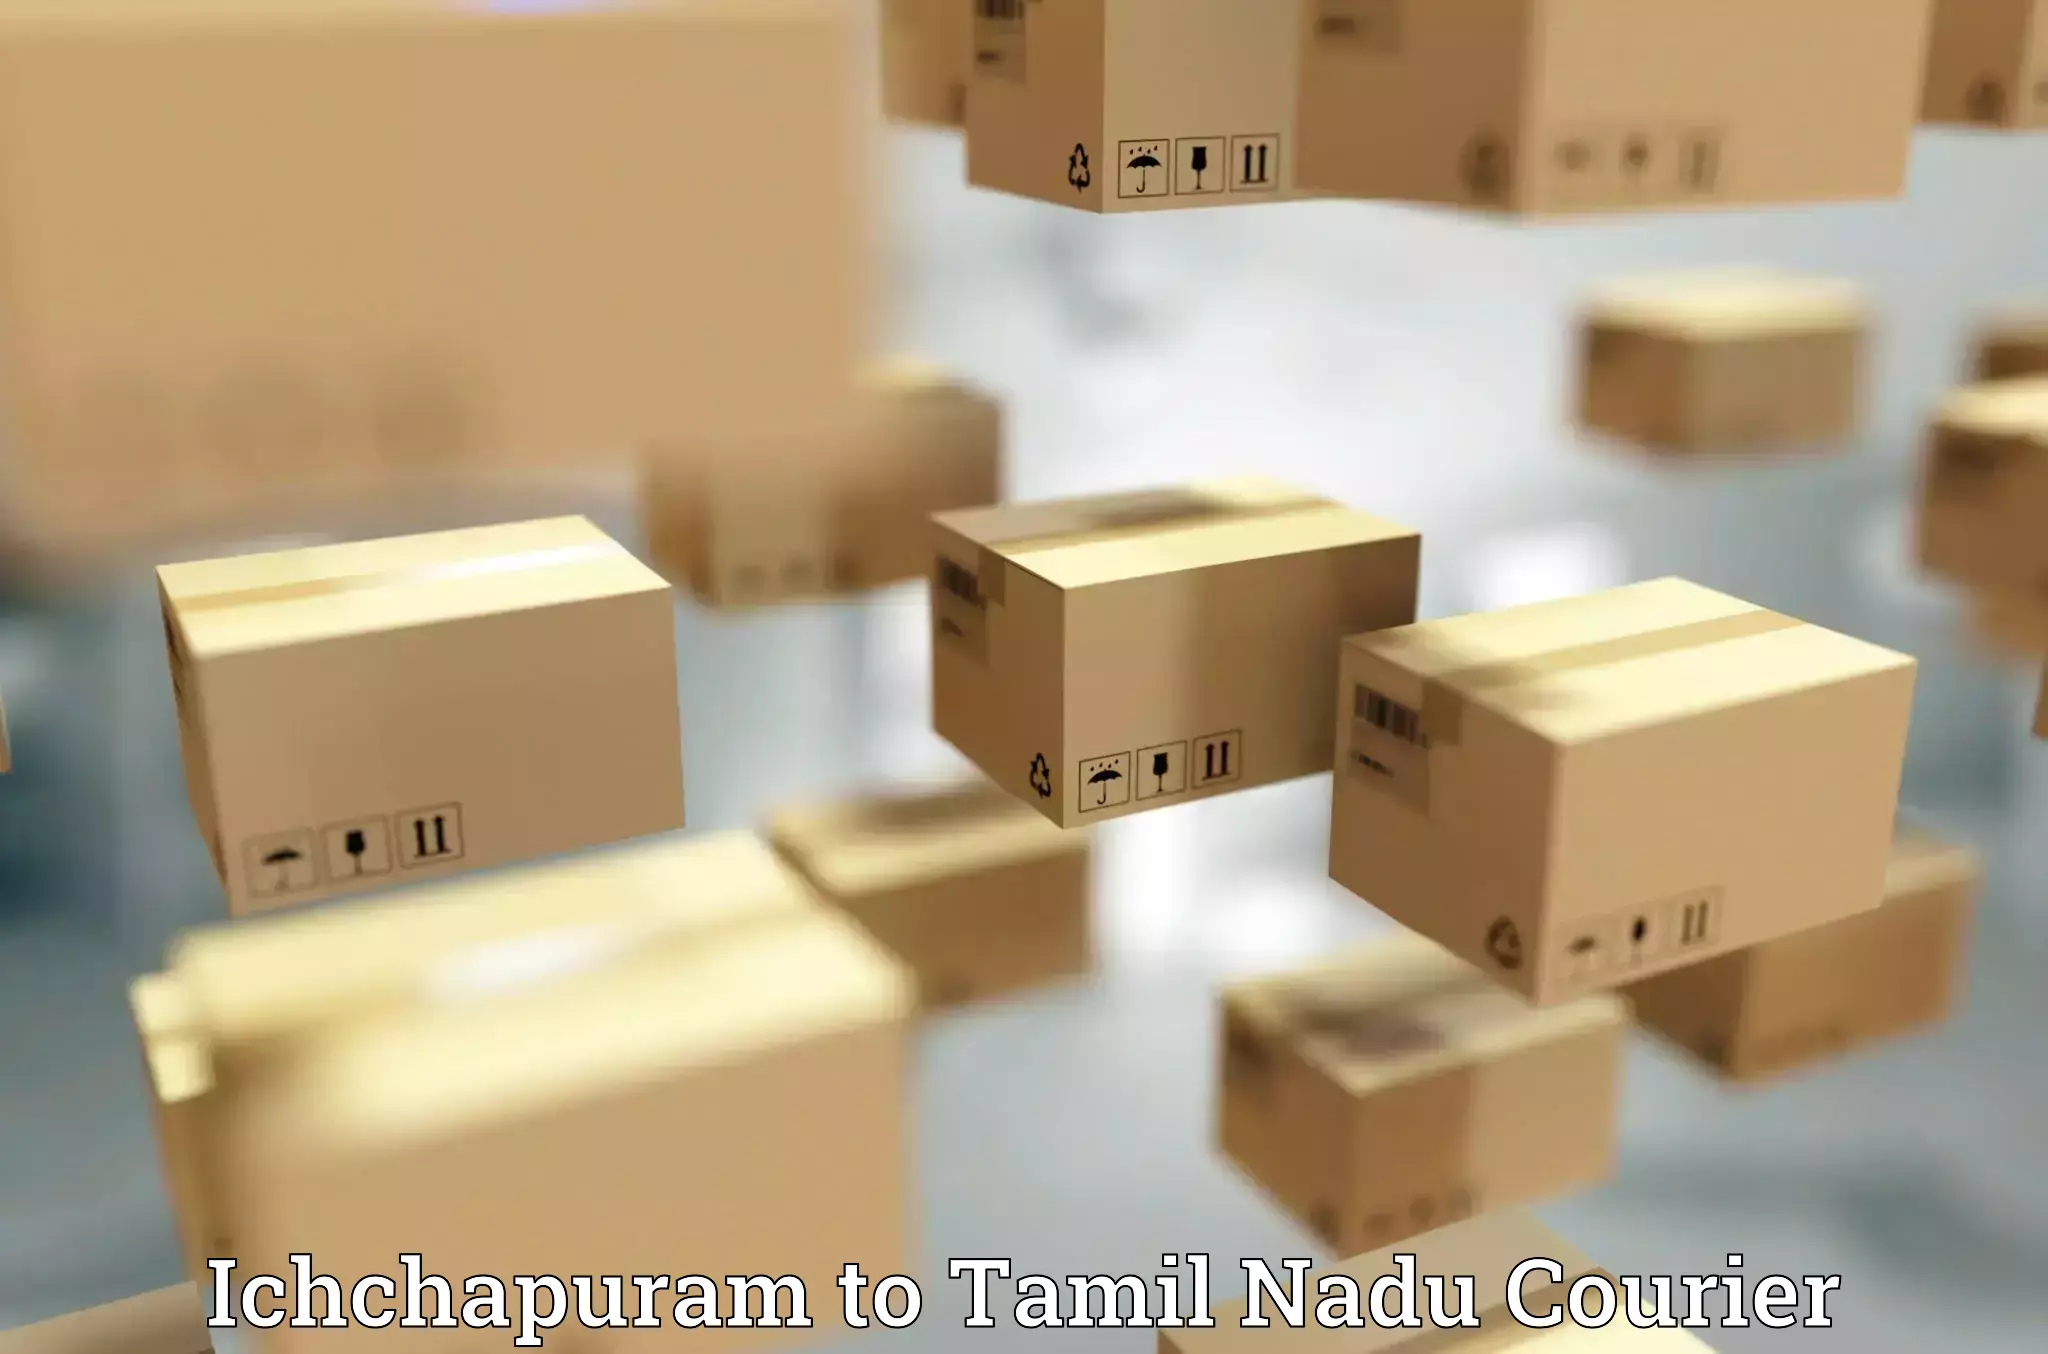 Next-day delivery options Ichchapuram to Gudiyattam